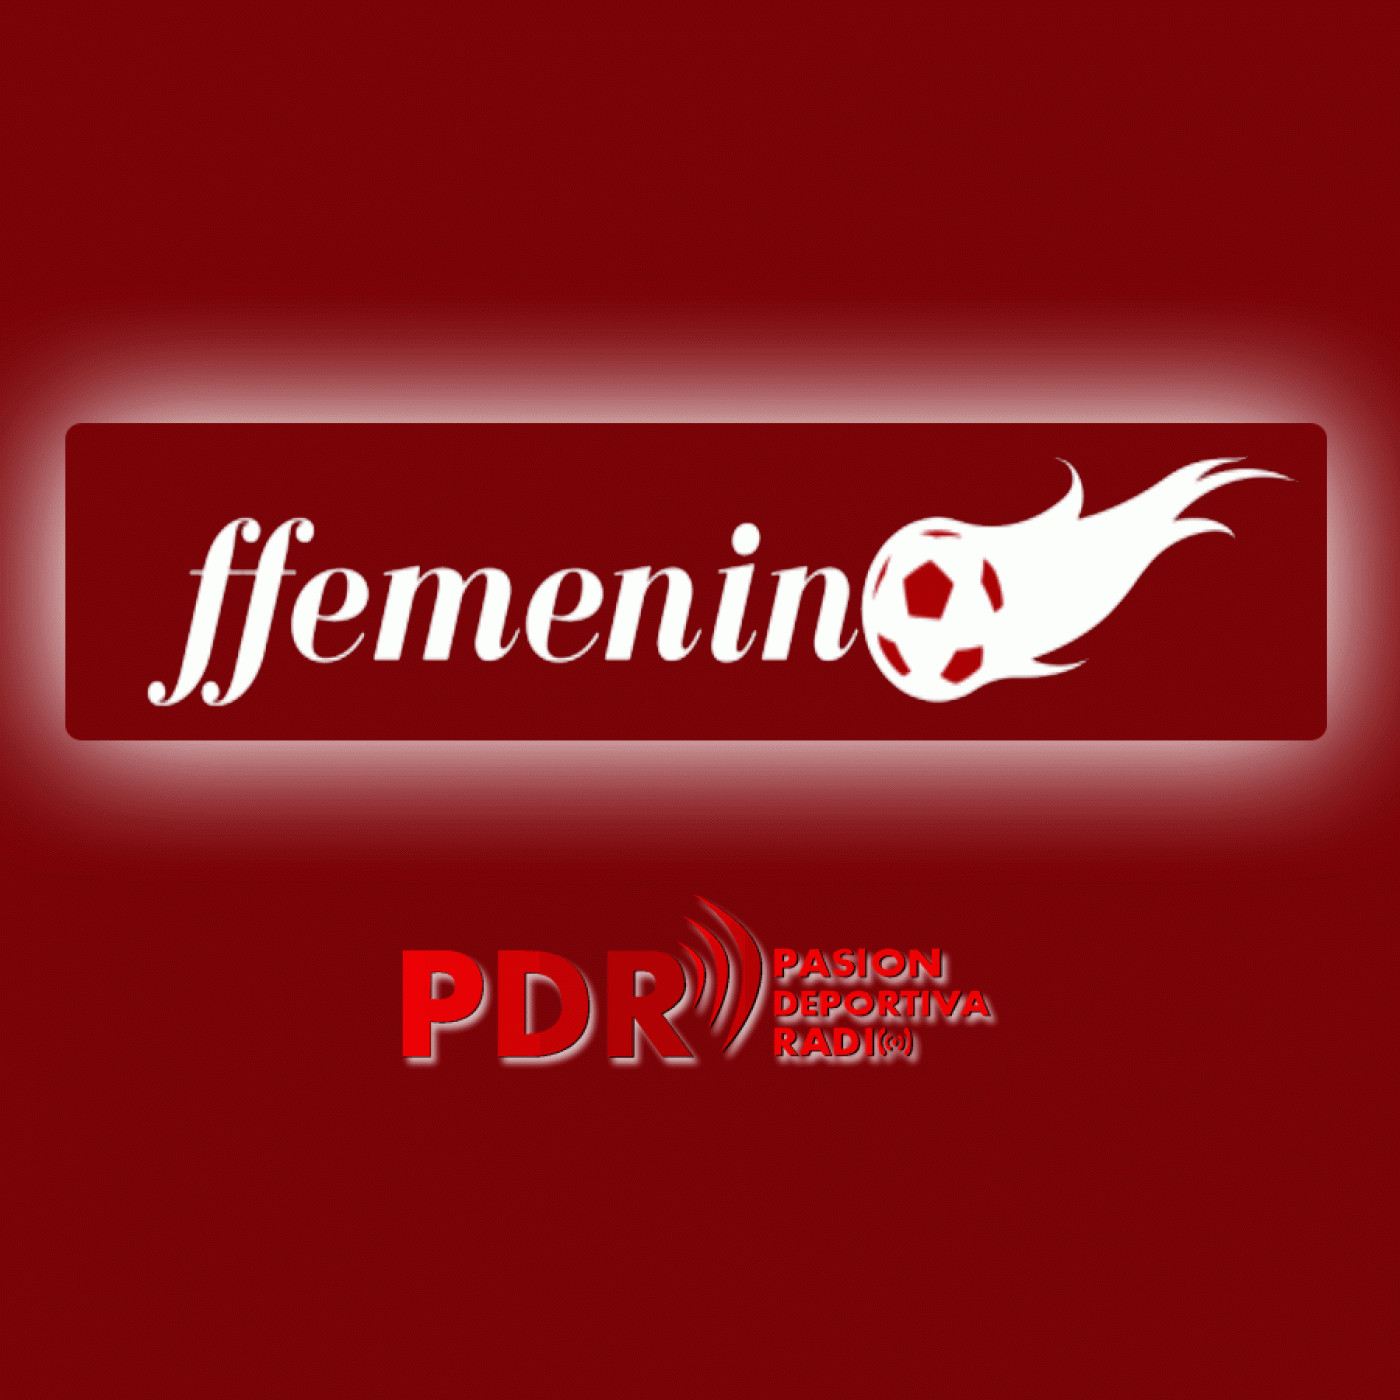 Programa FFemenino Radio